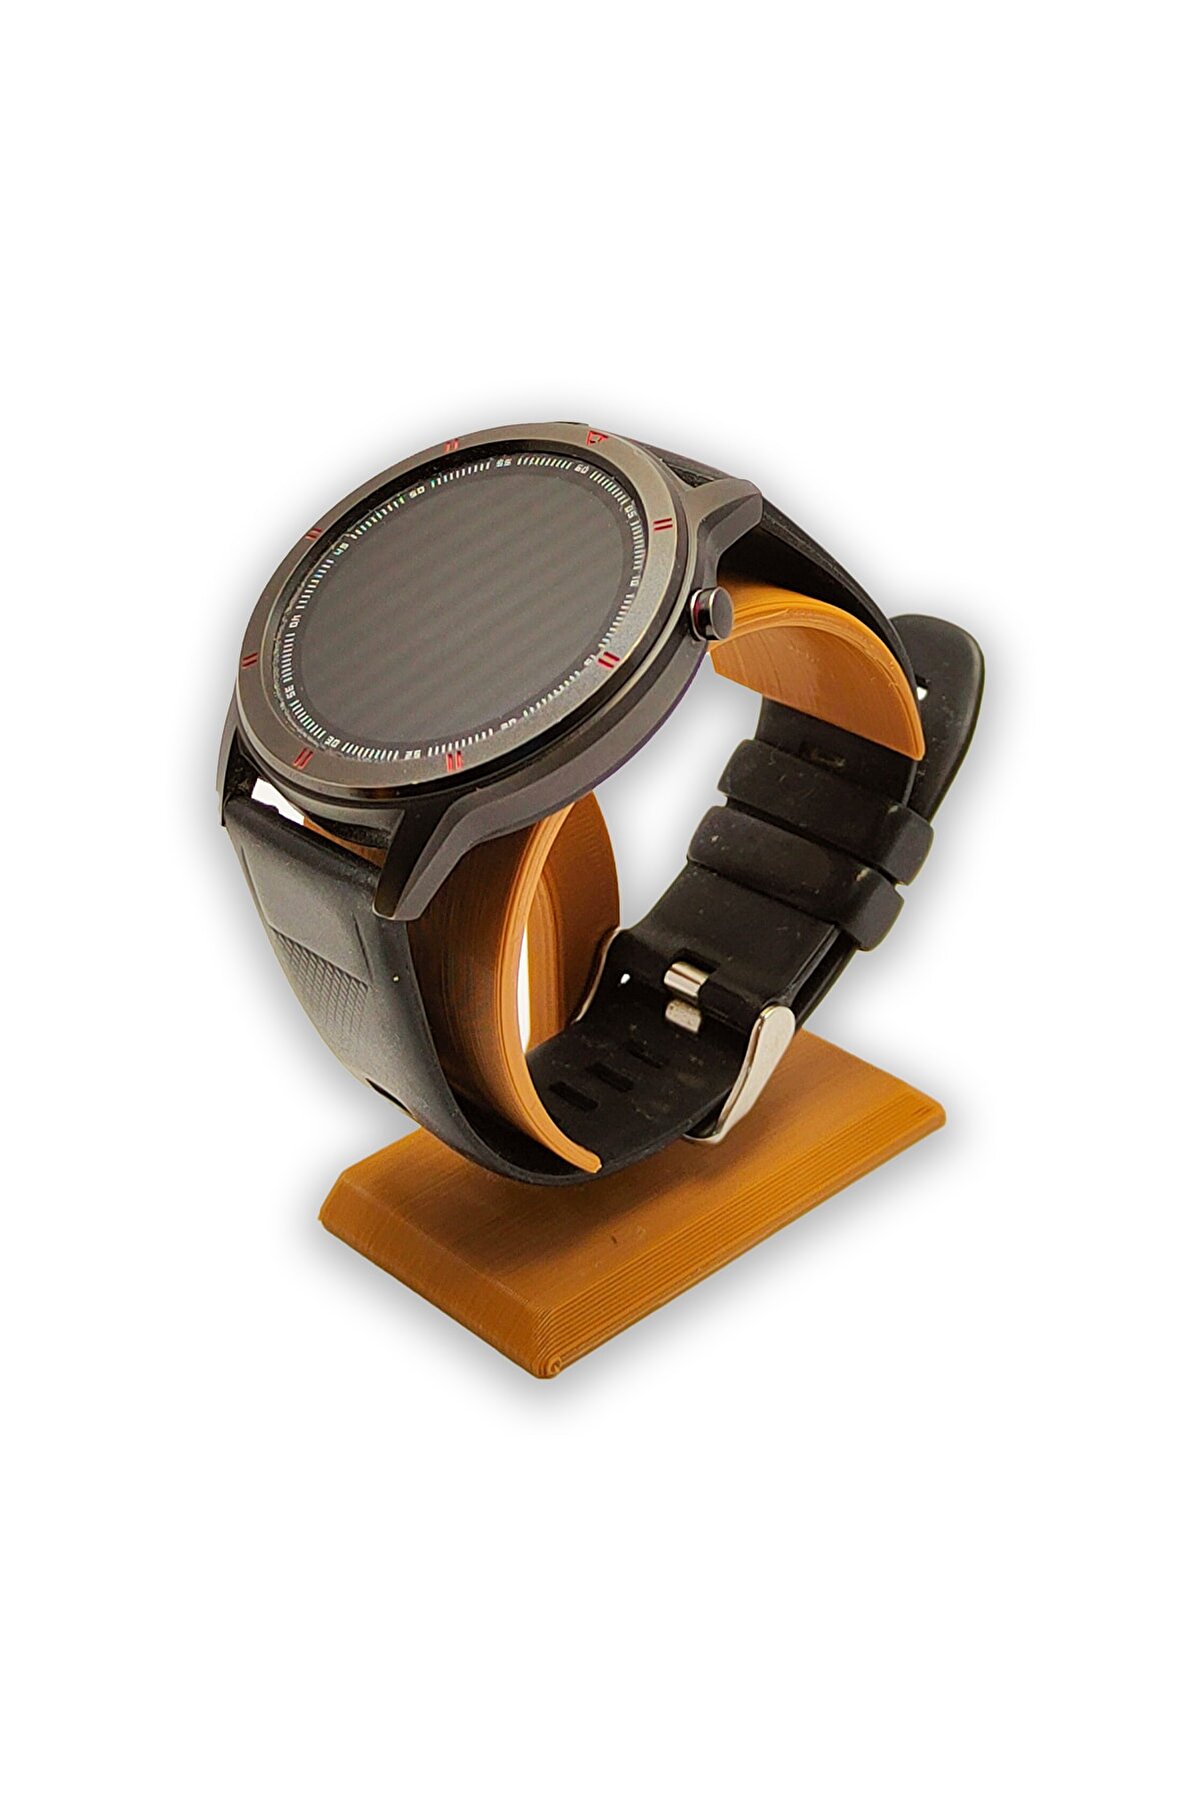 BİRRDESİGN Kahverengi Kişisel Saat Standı Özel Takı Aksesuar Bileklik Metal Saat Dijital Saat Akıllı Saat